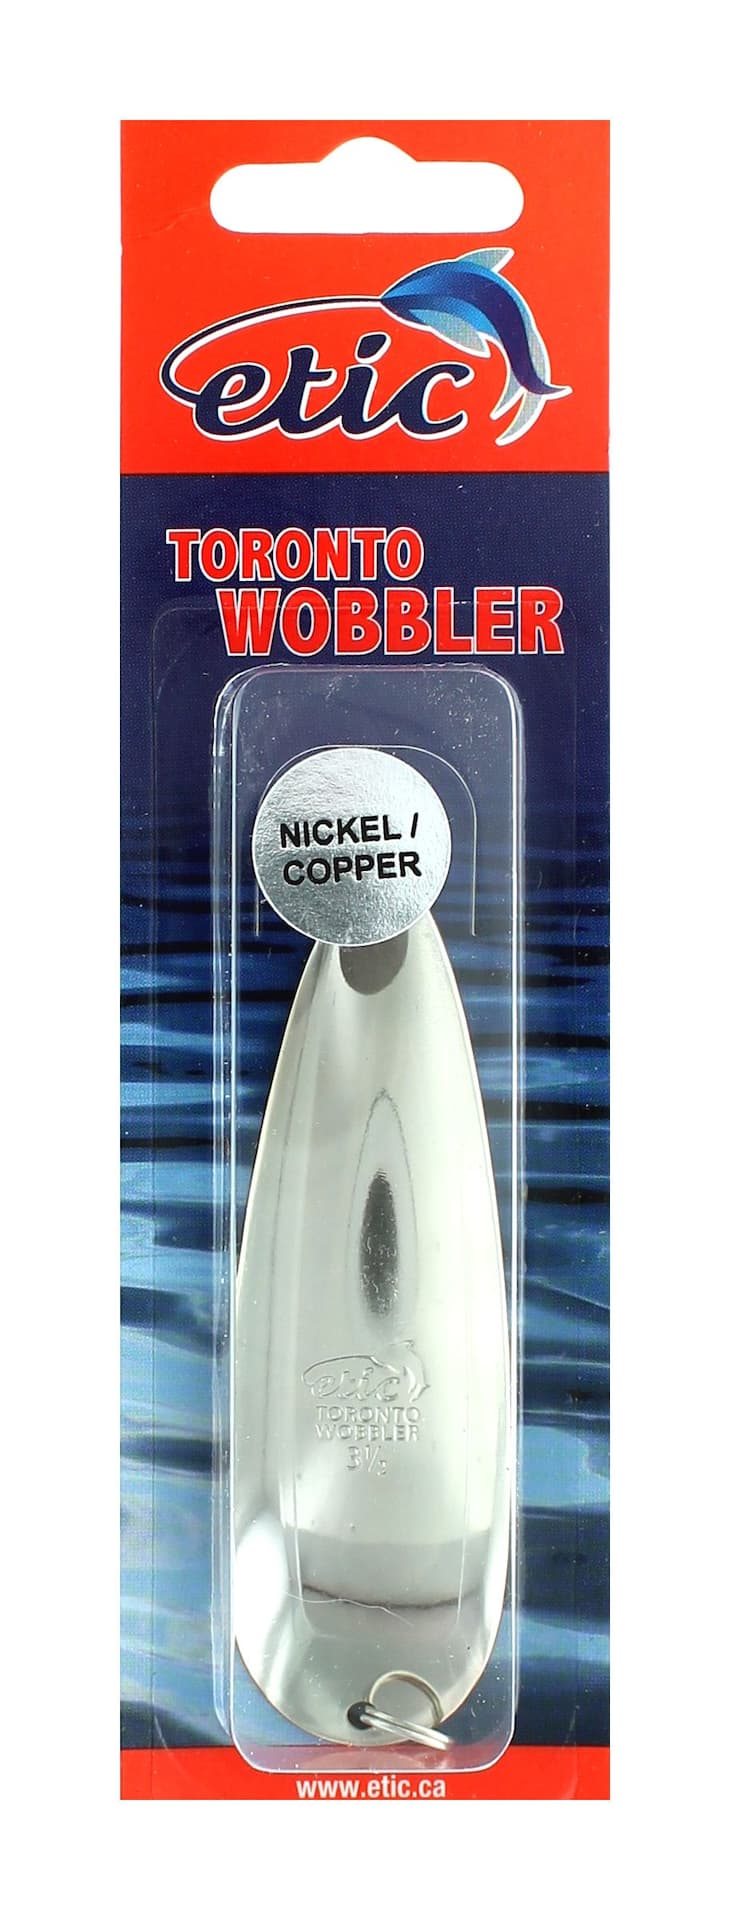 Etic Toronto Wobbler, Nickel Copper, 3.5-in